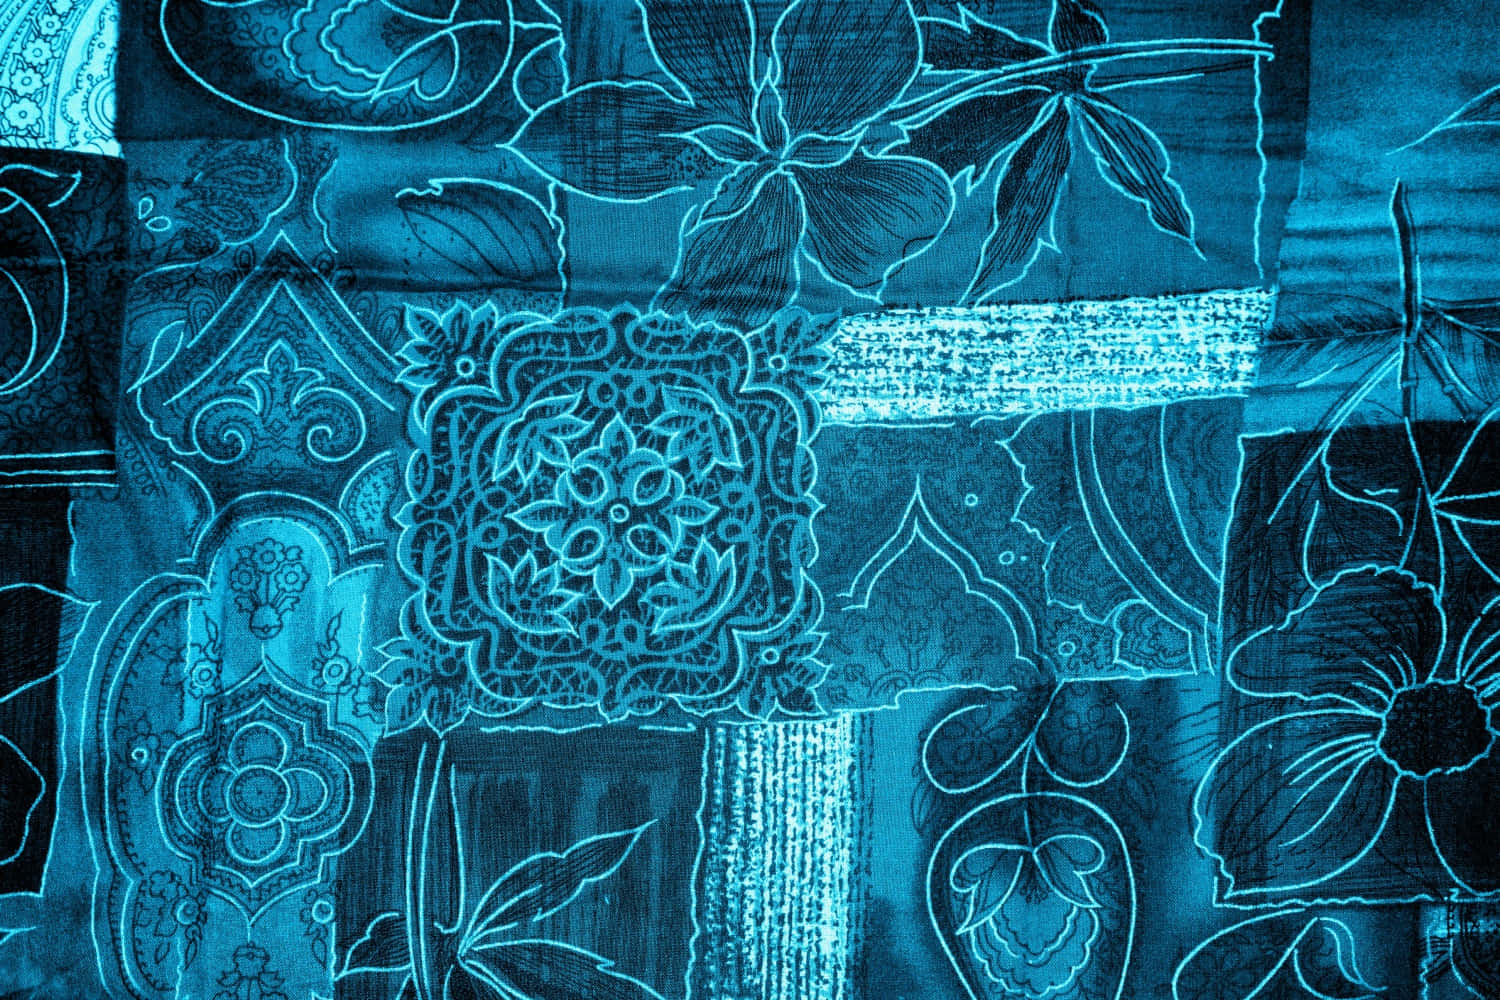 Bildmit Stoffstruktur, Neonblaues Blumenmuster